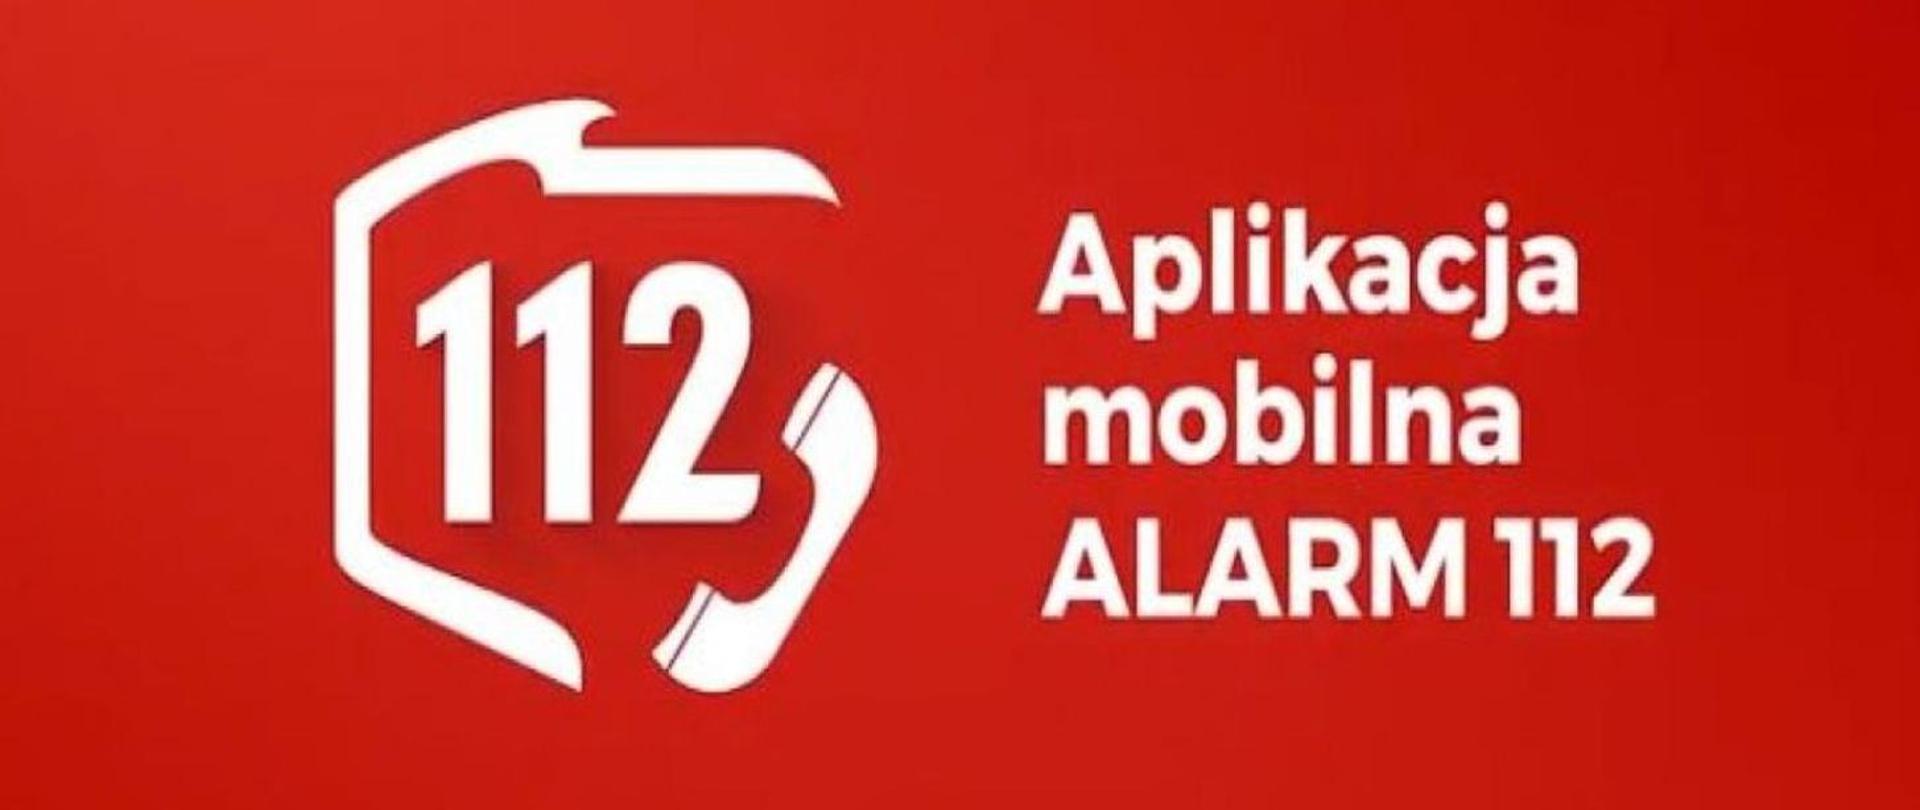 Obraz to czerwone tło na którym naniesione są białe napisy. Z lewej strony obrazu widzimy mapę polski a w środku napis 112 wraz ze słuchawką. Po prawej stronie widzimy napis: Aplikacja mobilna ALARM 112. 